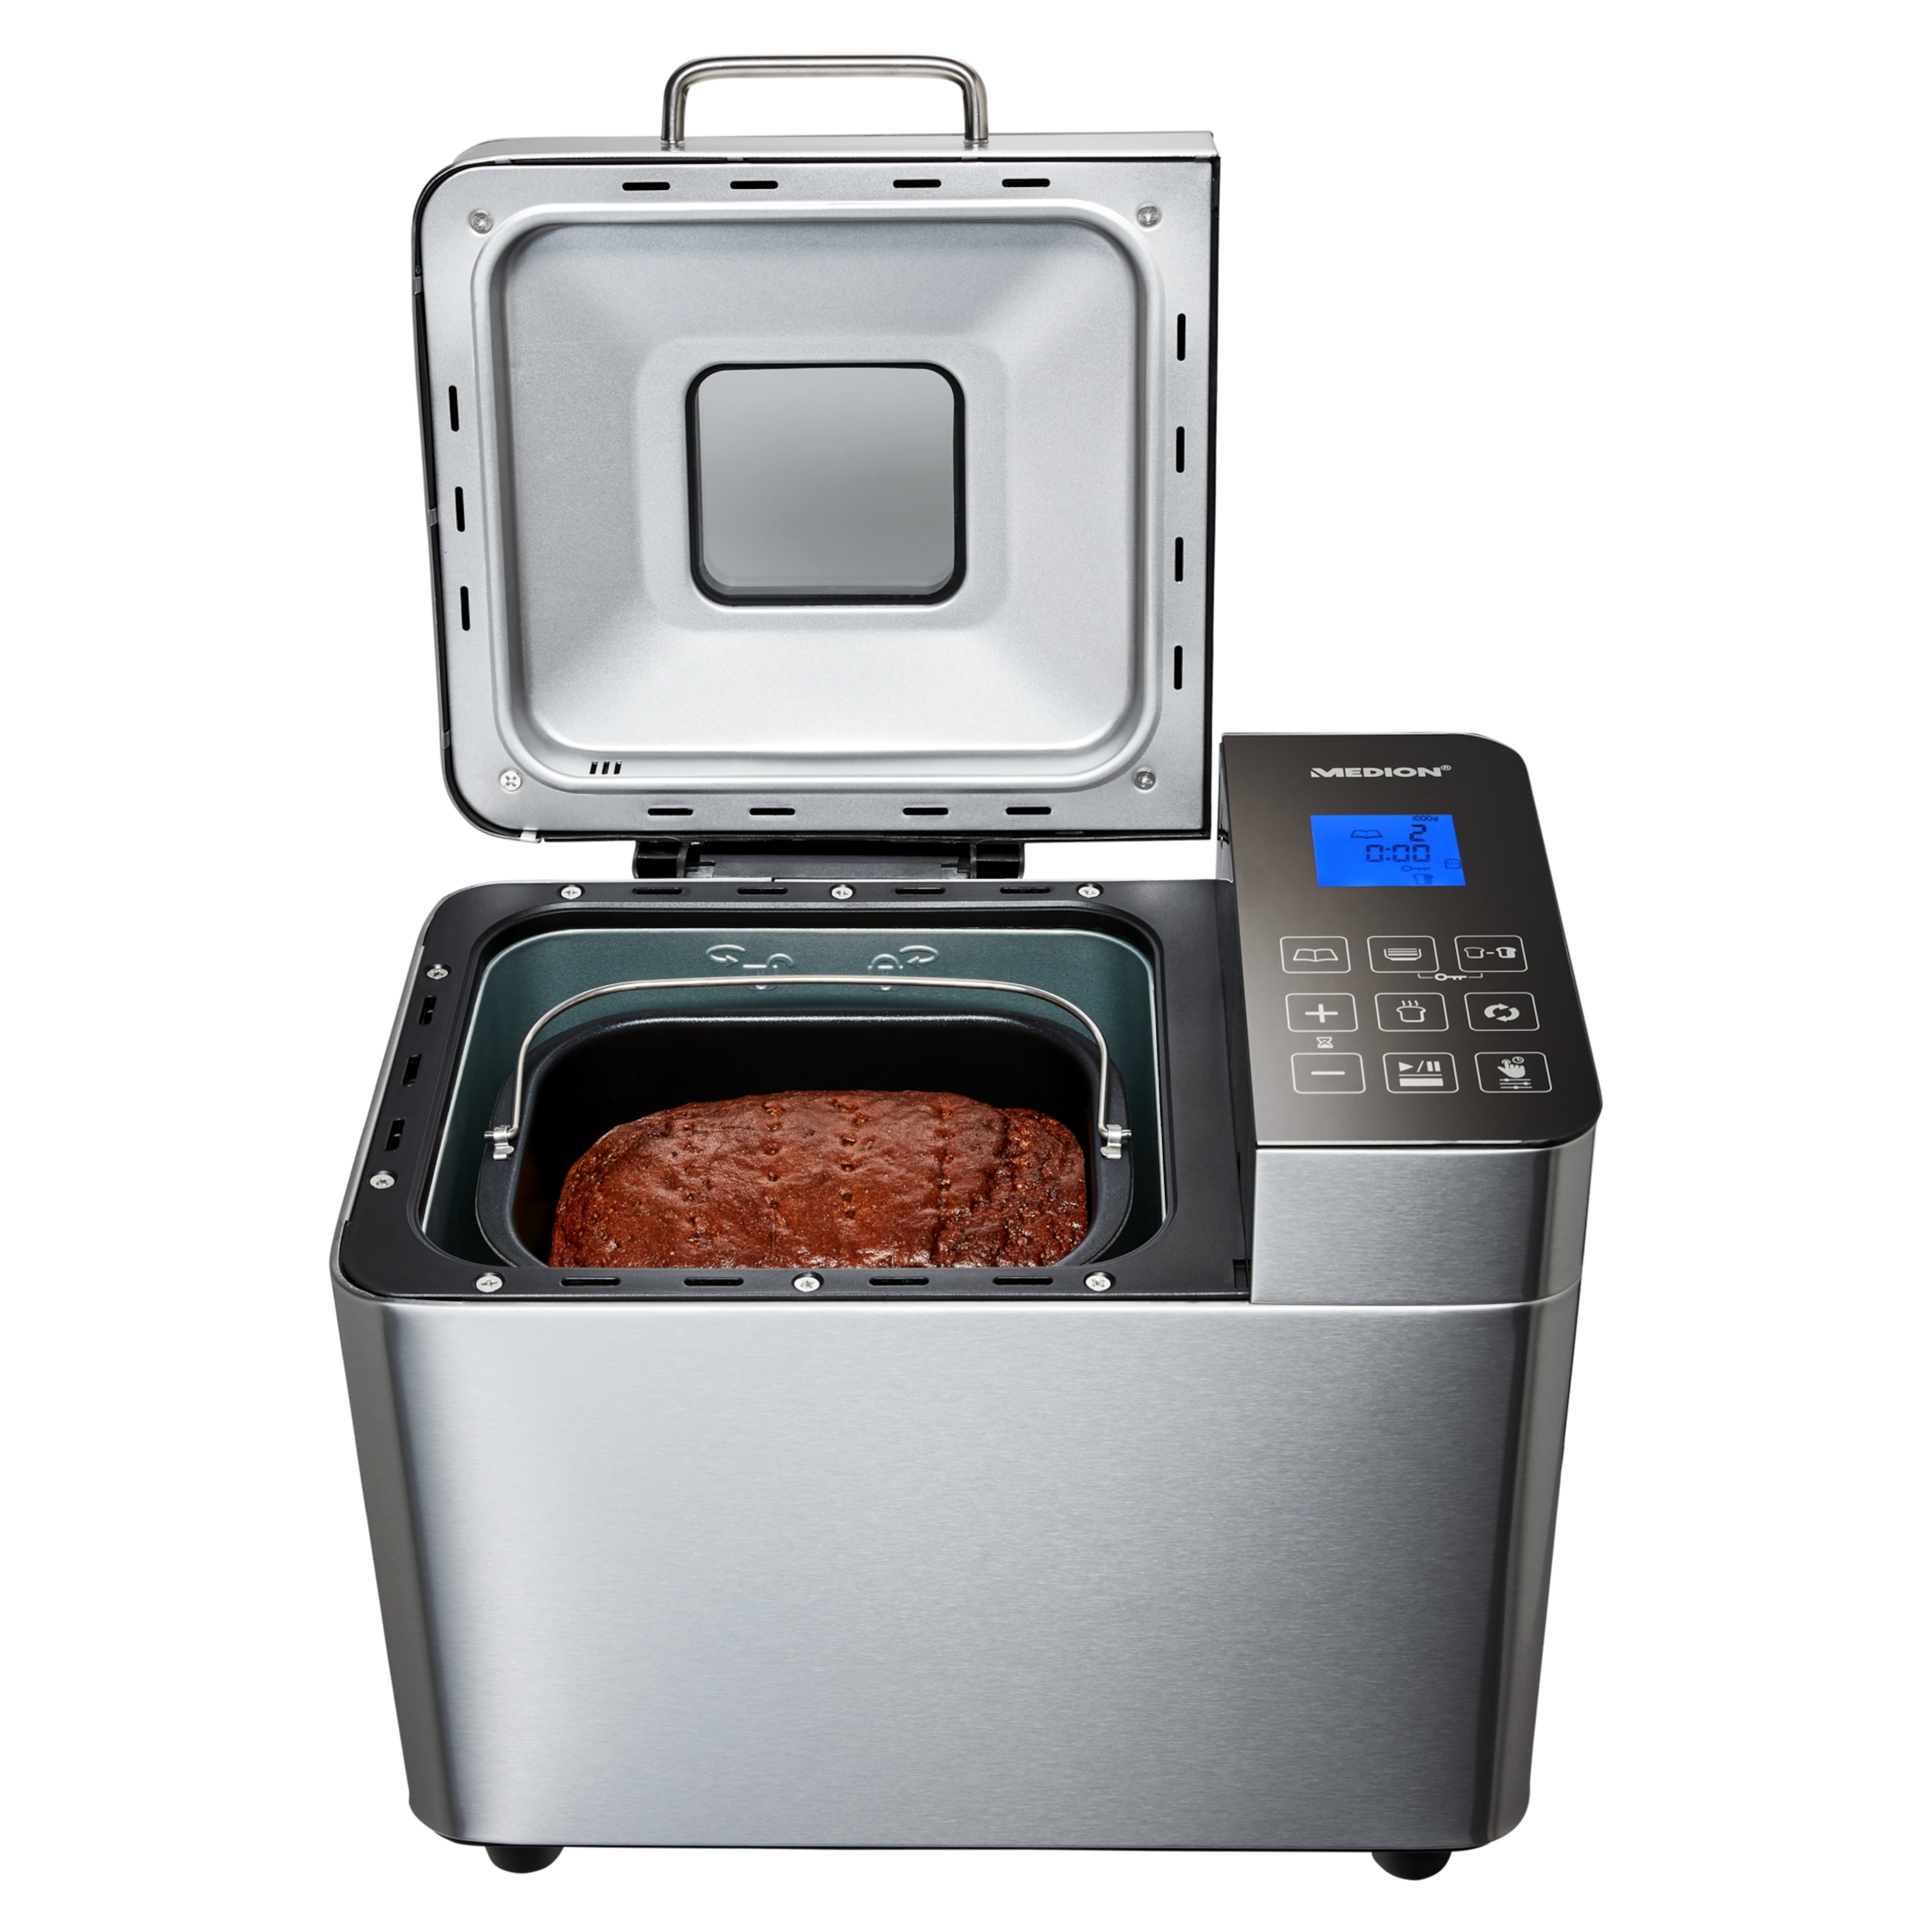 Machine à pain MEDION 550W, 1000g, 19 programmes de cuisson, 3 degrés de brunissage, fonction maintien au chaud, présélection du temps 